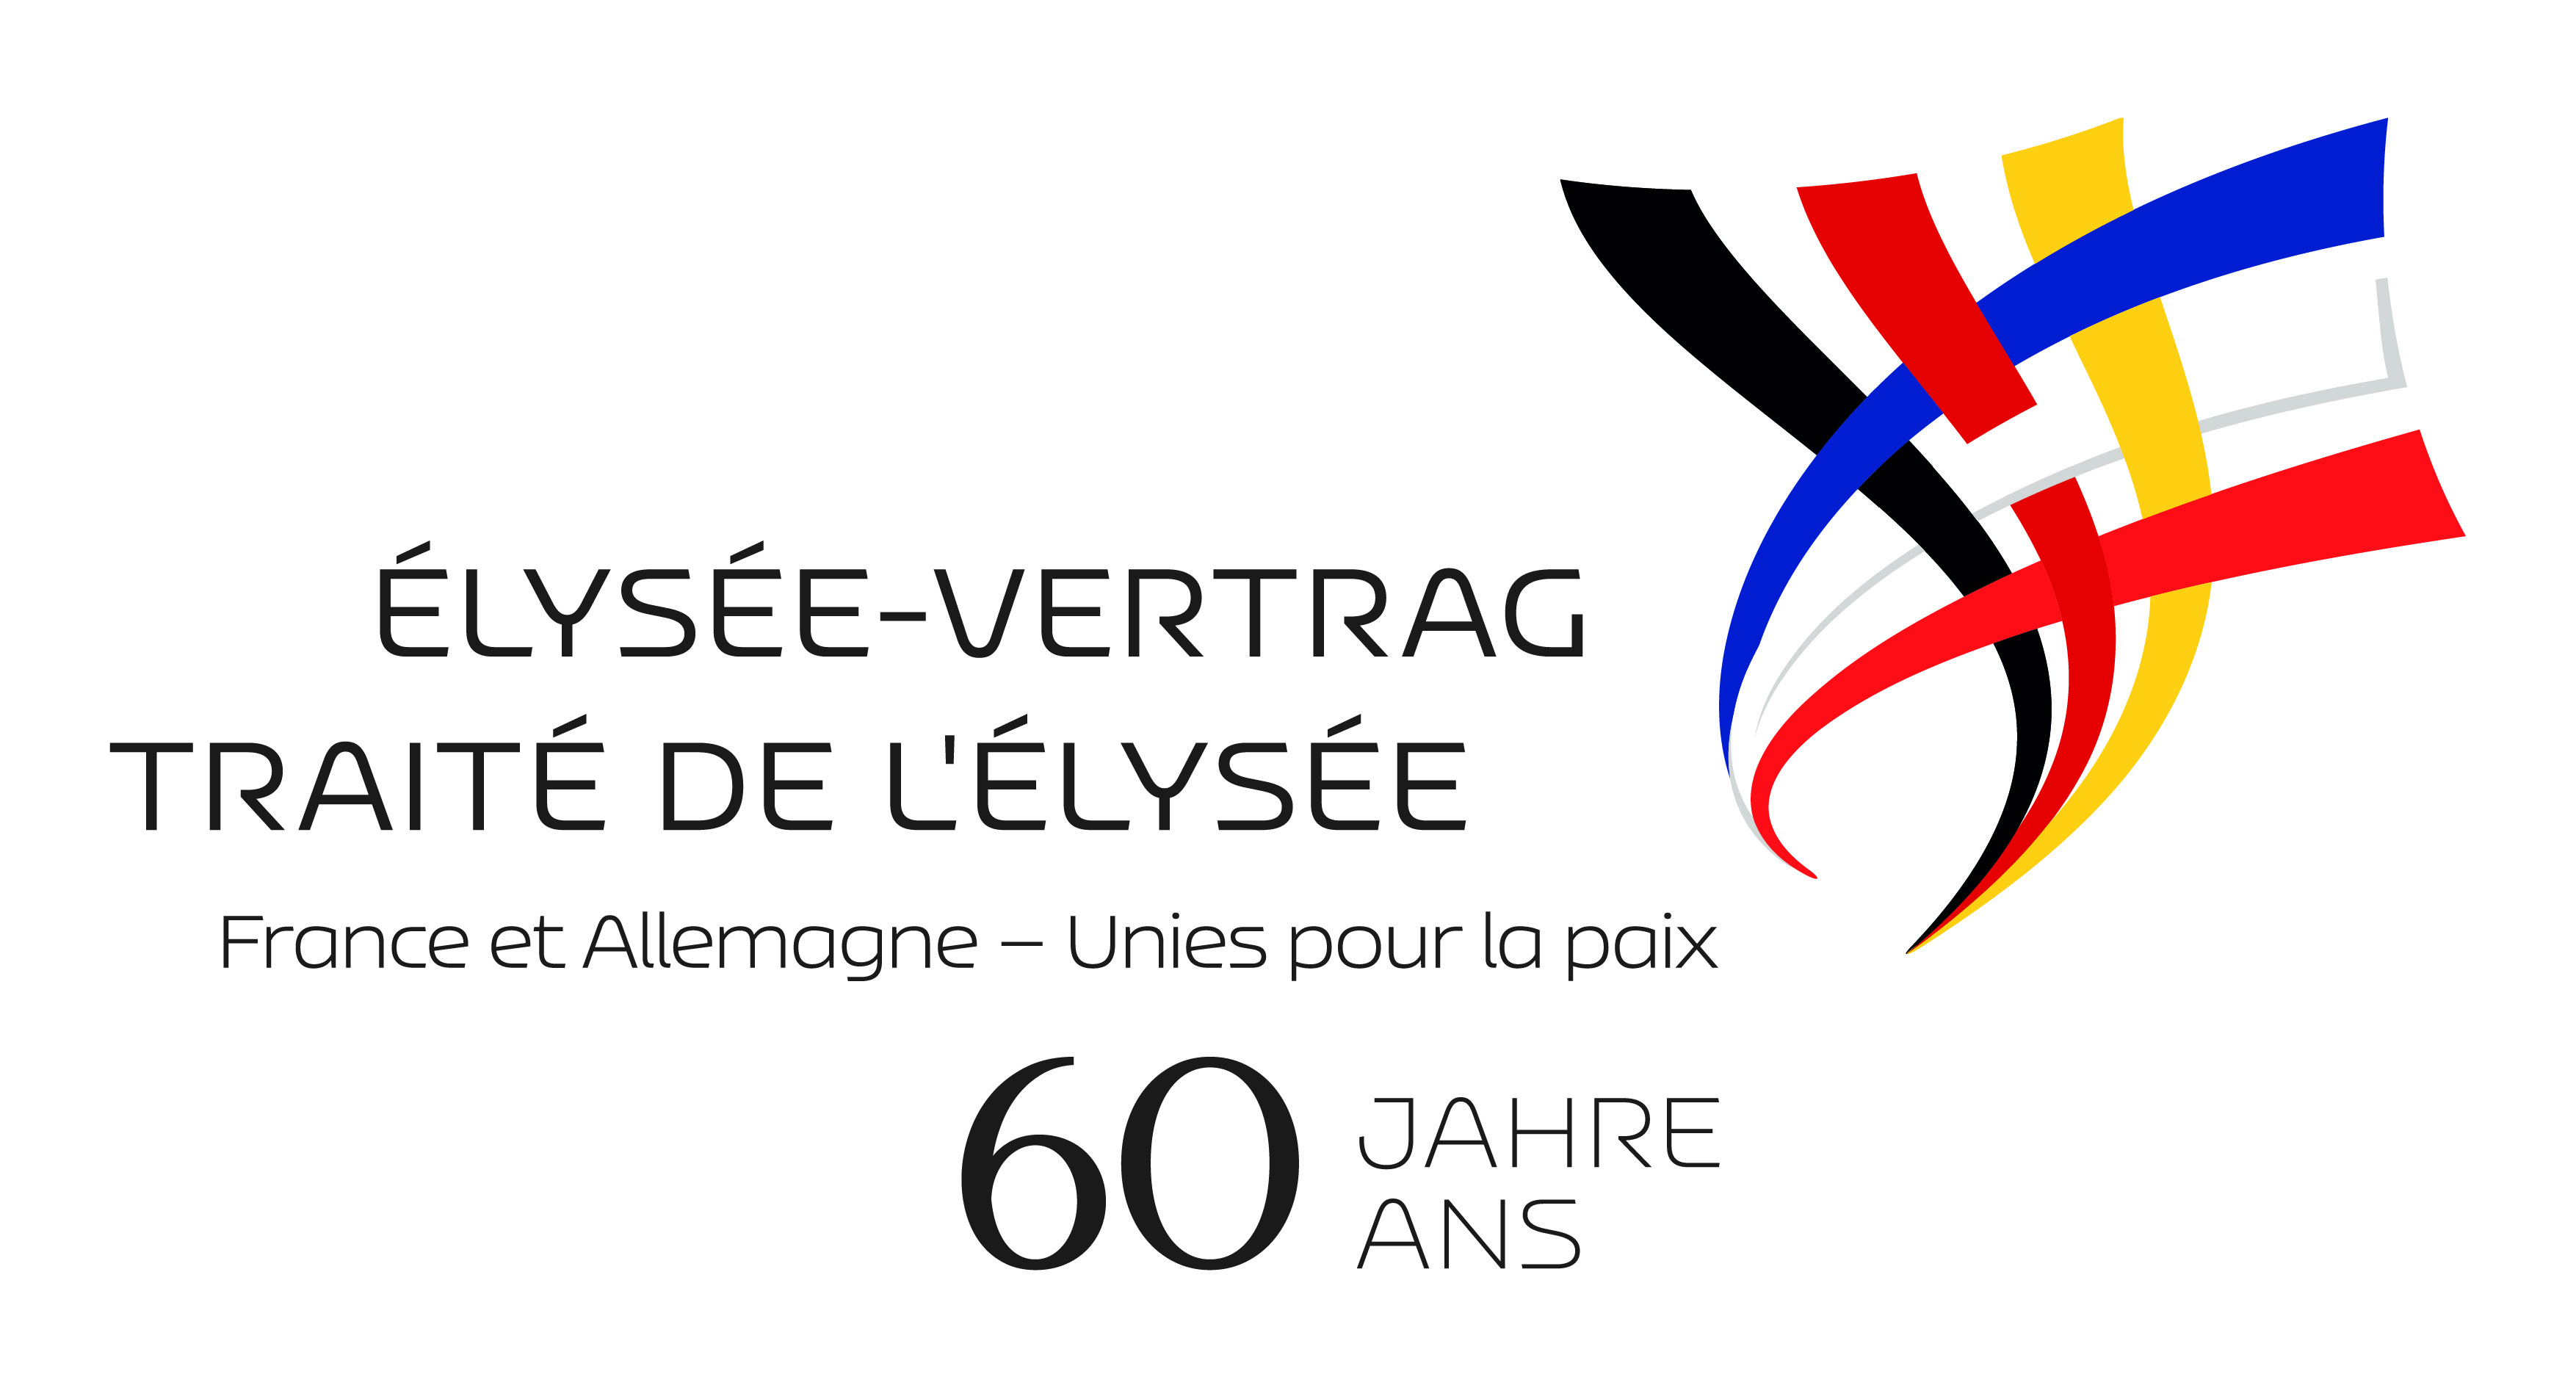 60 Jahre Elysee-Vertrag